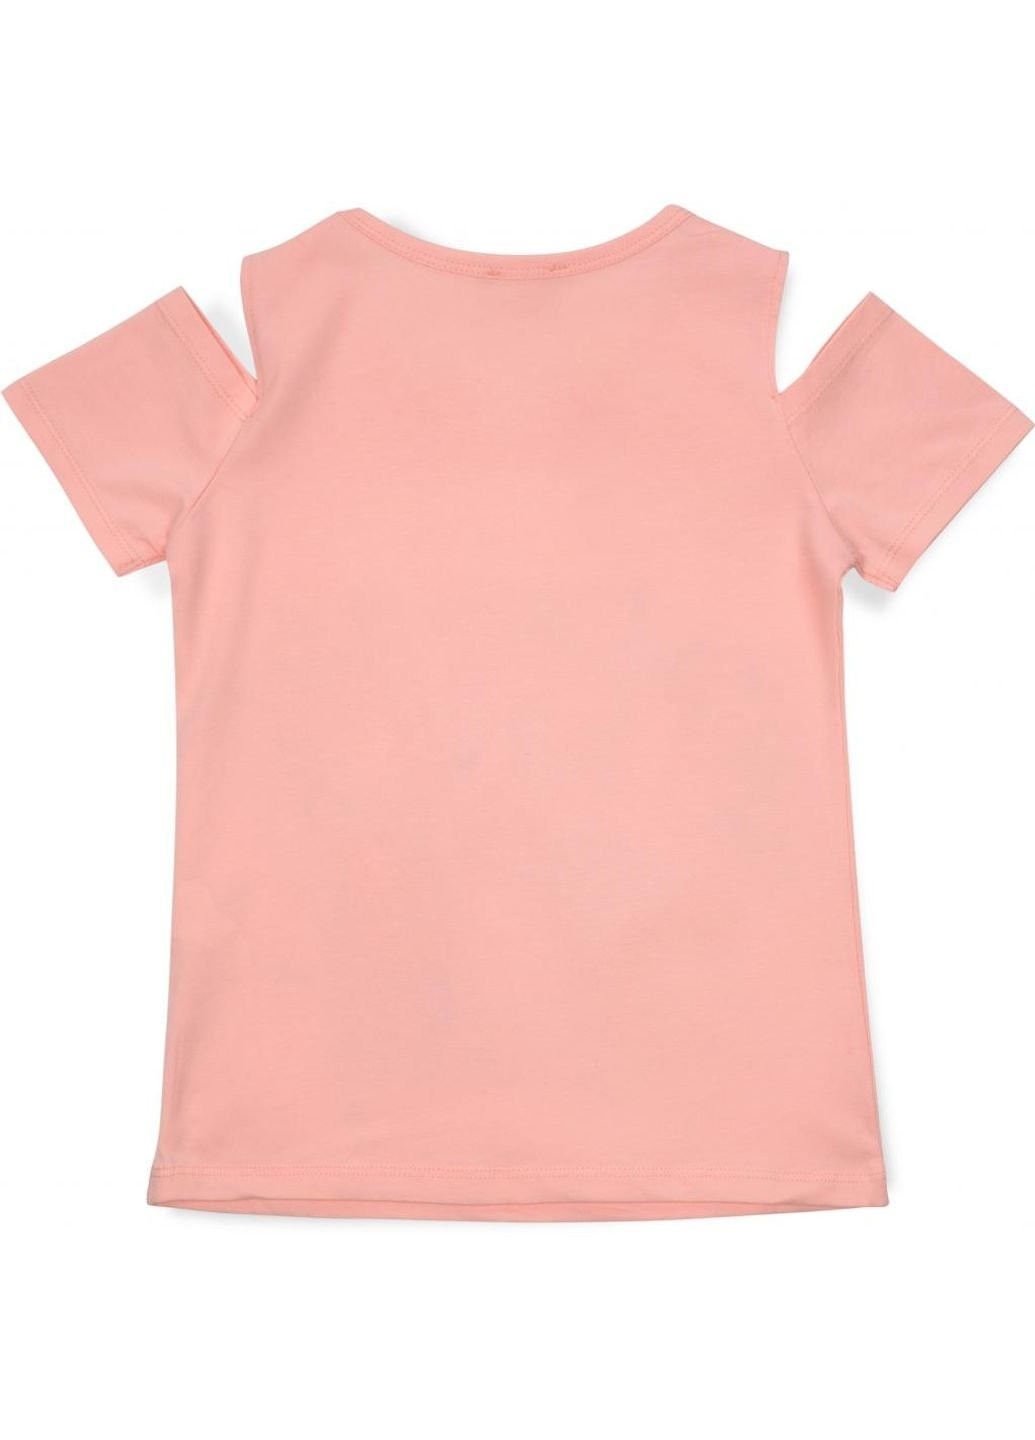 Персикова демісезонна футболка дитяча з дівчинкою (14124-128g-peach) Breeze